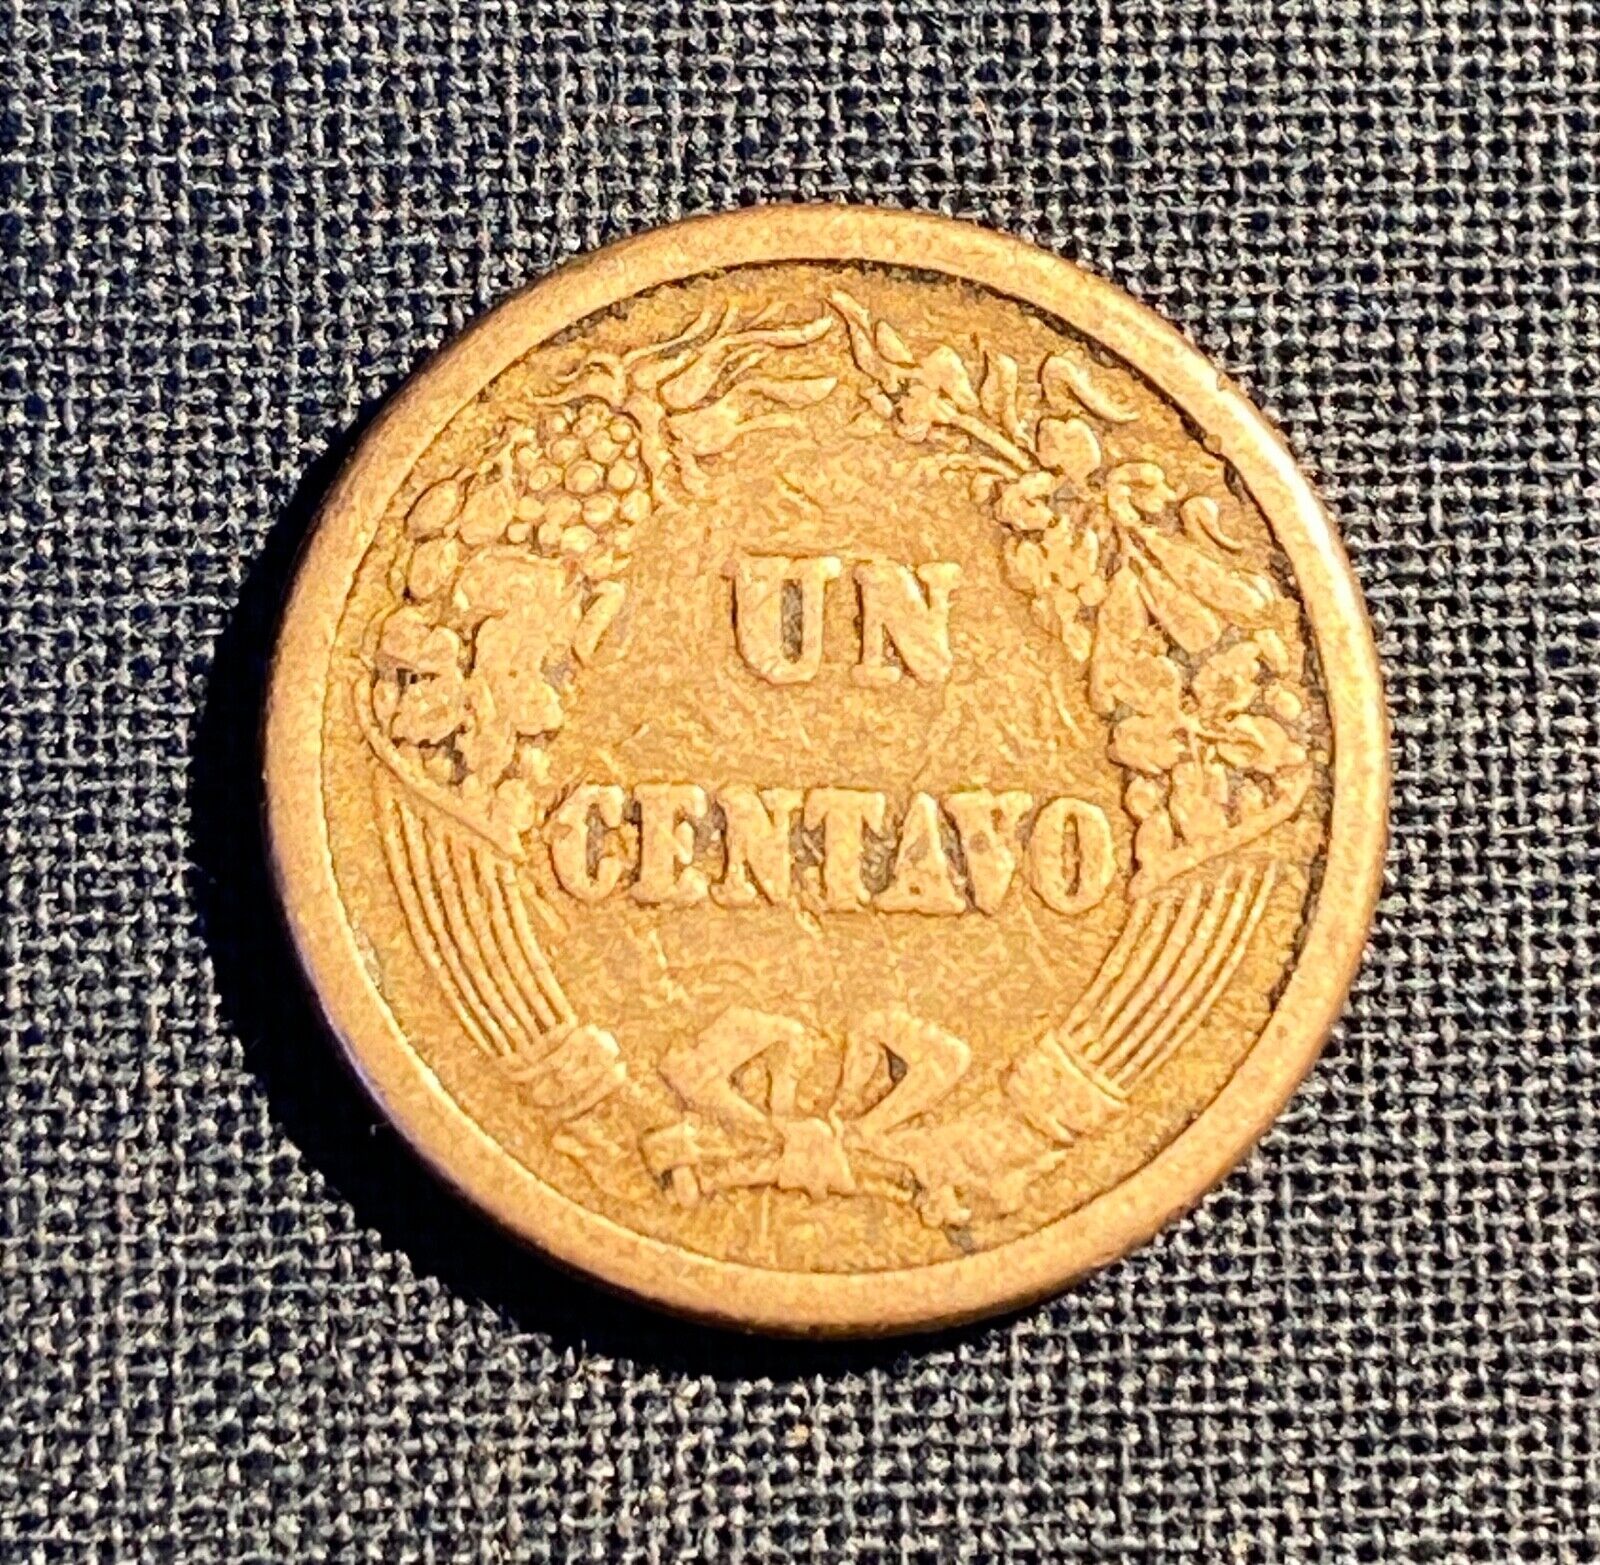 G - Peru - 1 Centavo - 1864  - Attractive Copper Coin!